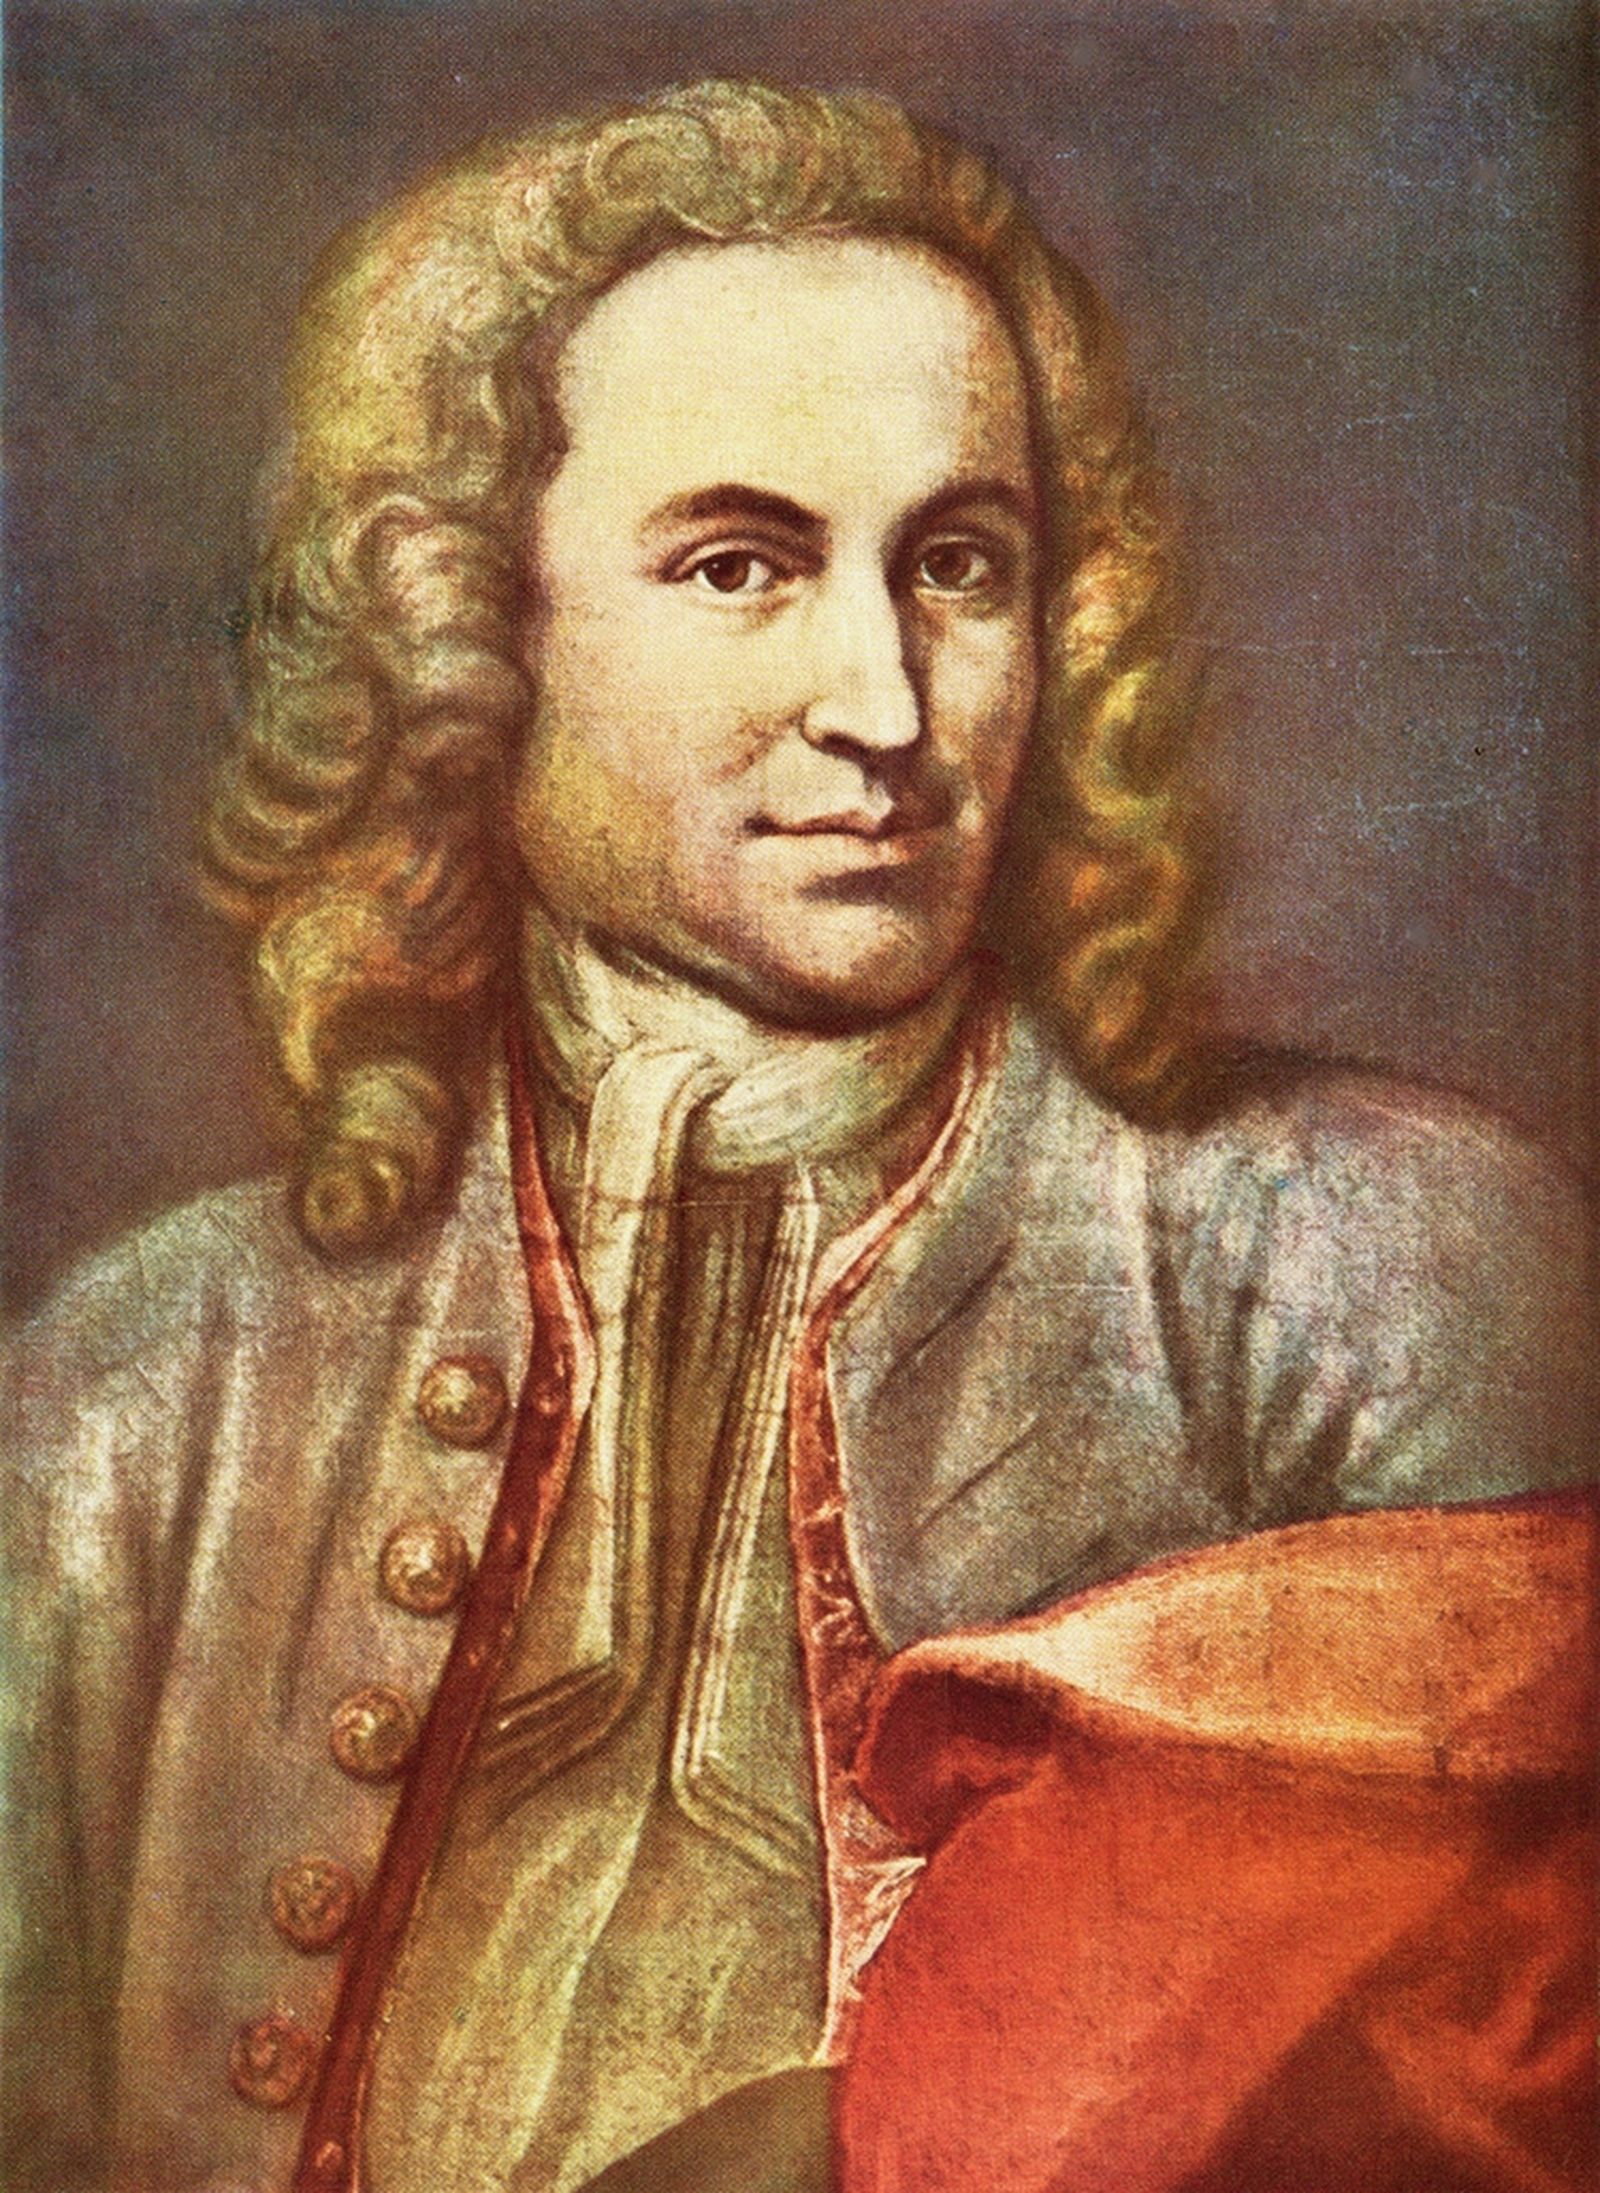 Иллюстрация: «Антология духовной органной музыки Иоганна Себастьяна Баха. Вечер третий»